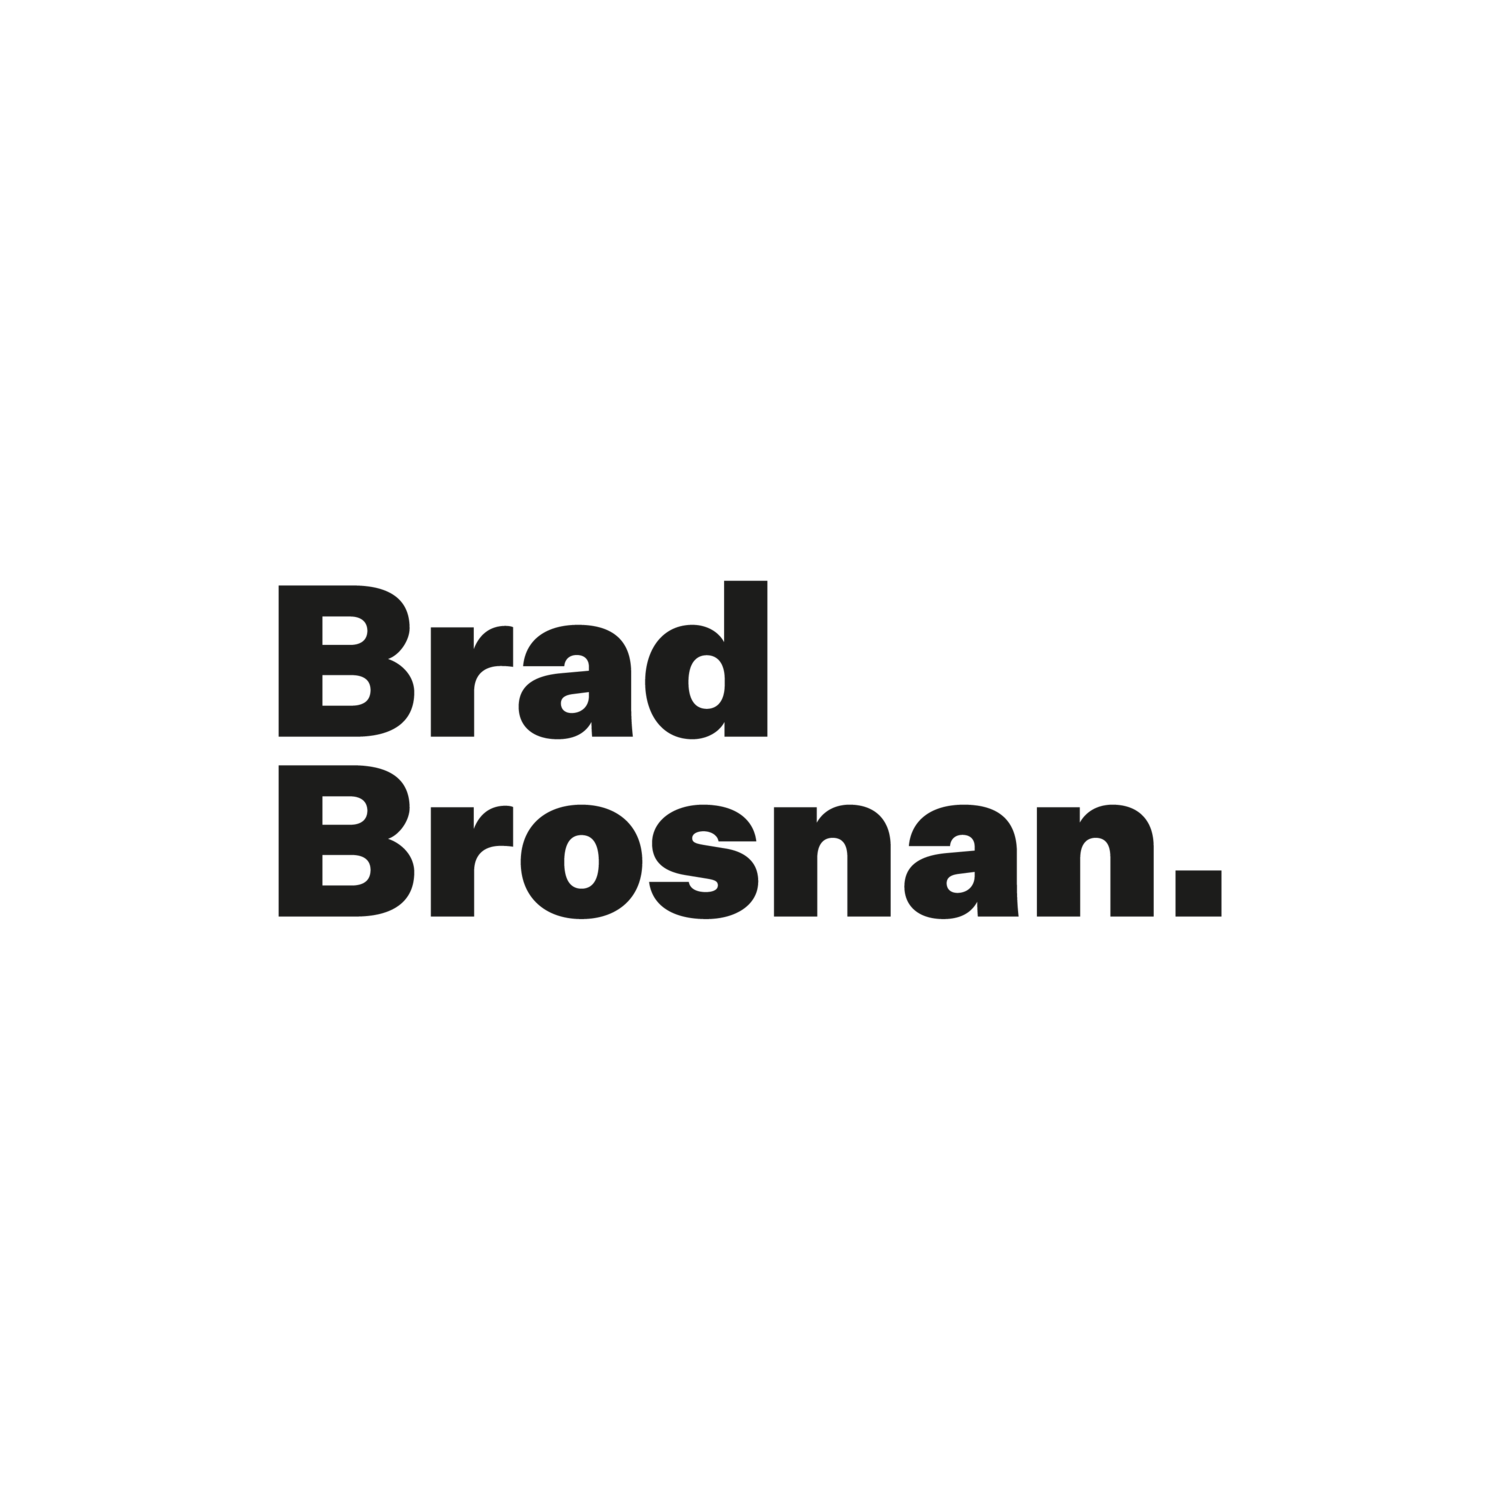 Brad Logo - Brad Brosnan